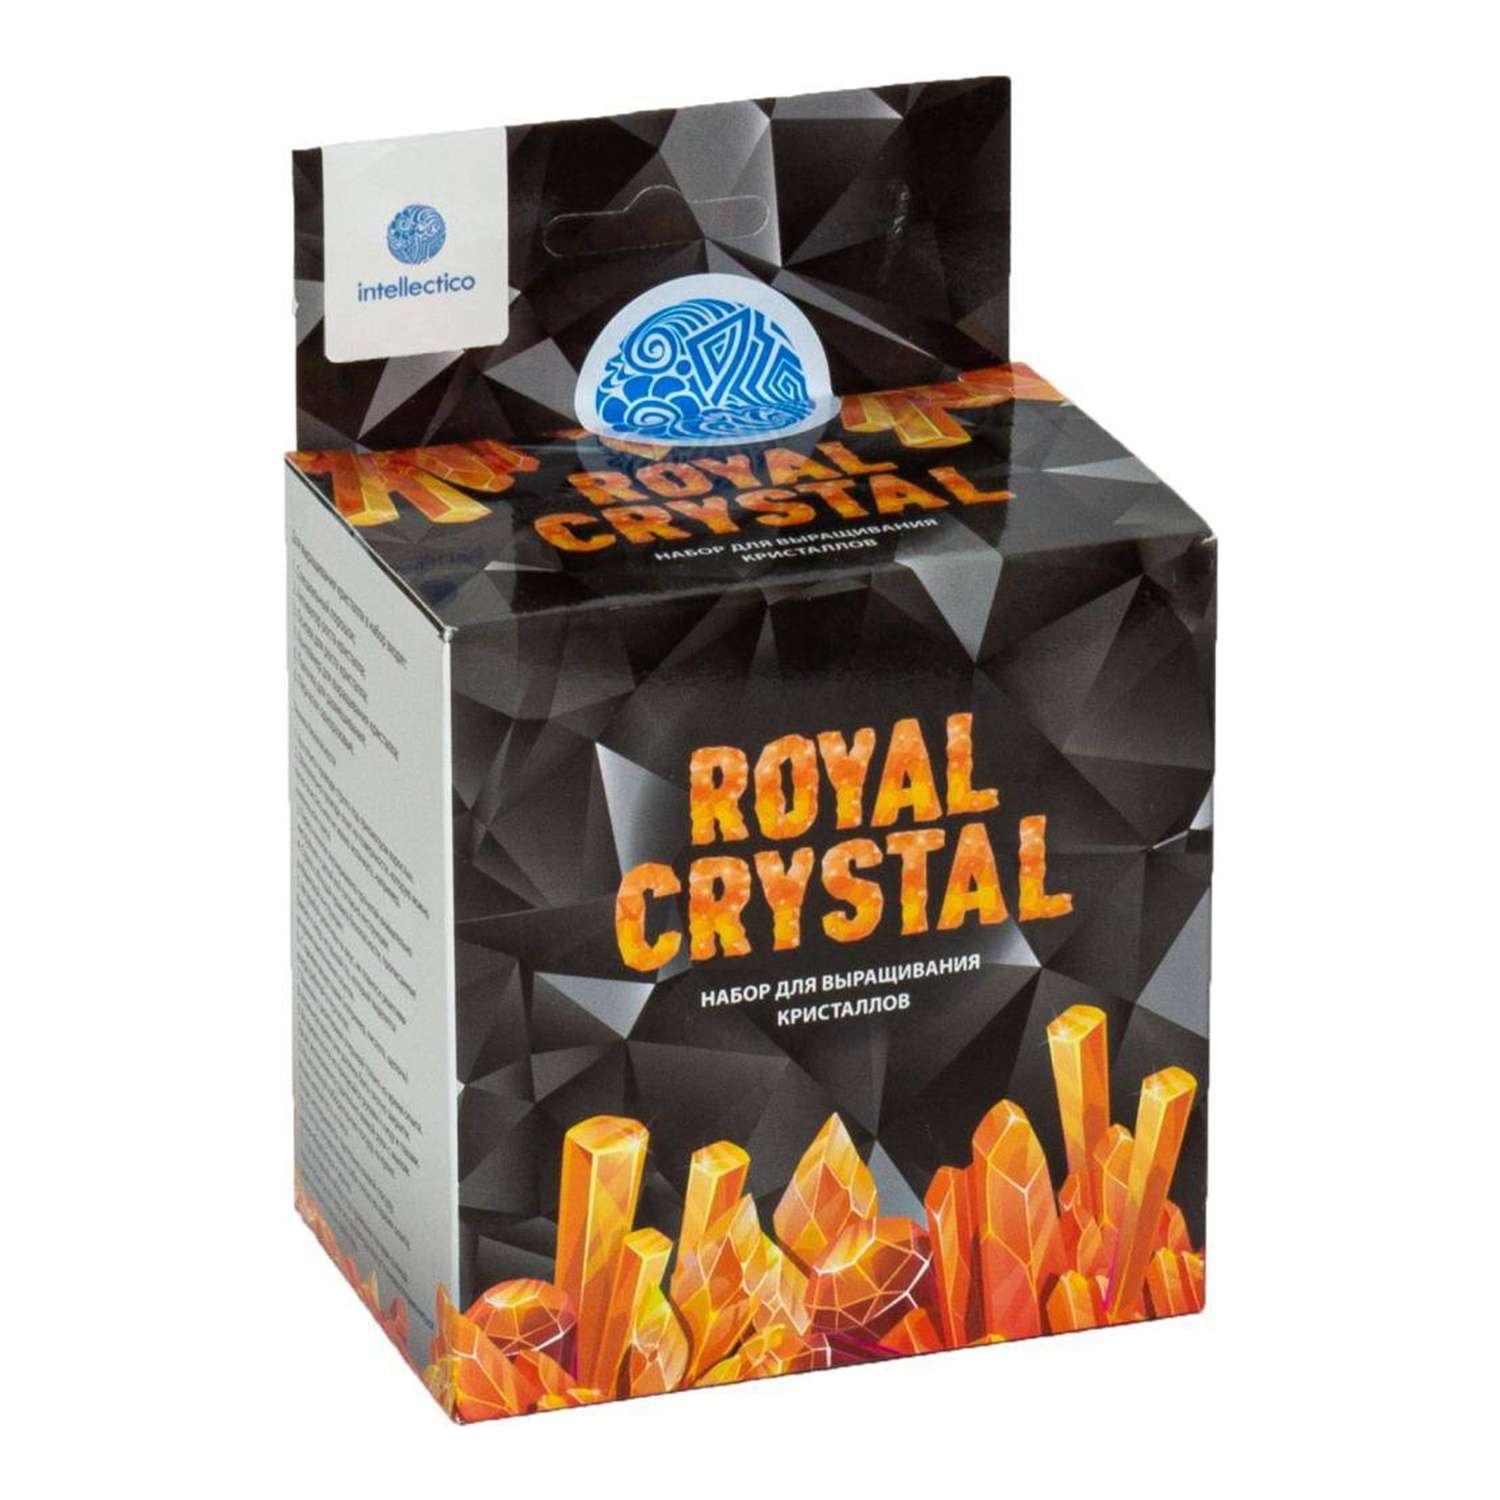 Набор для экспериментов intellectico Royal Crystal - фото 1